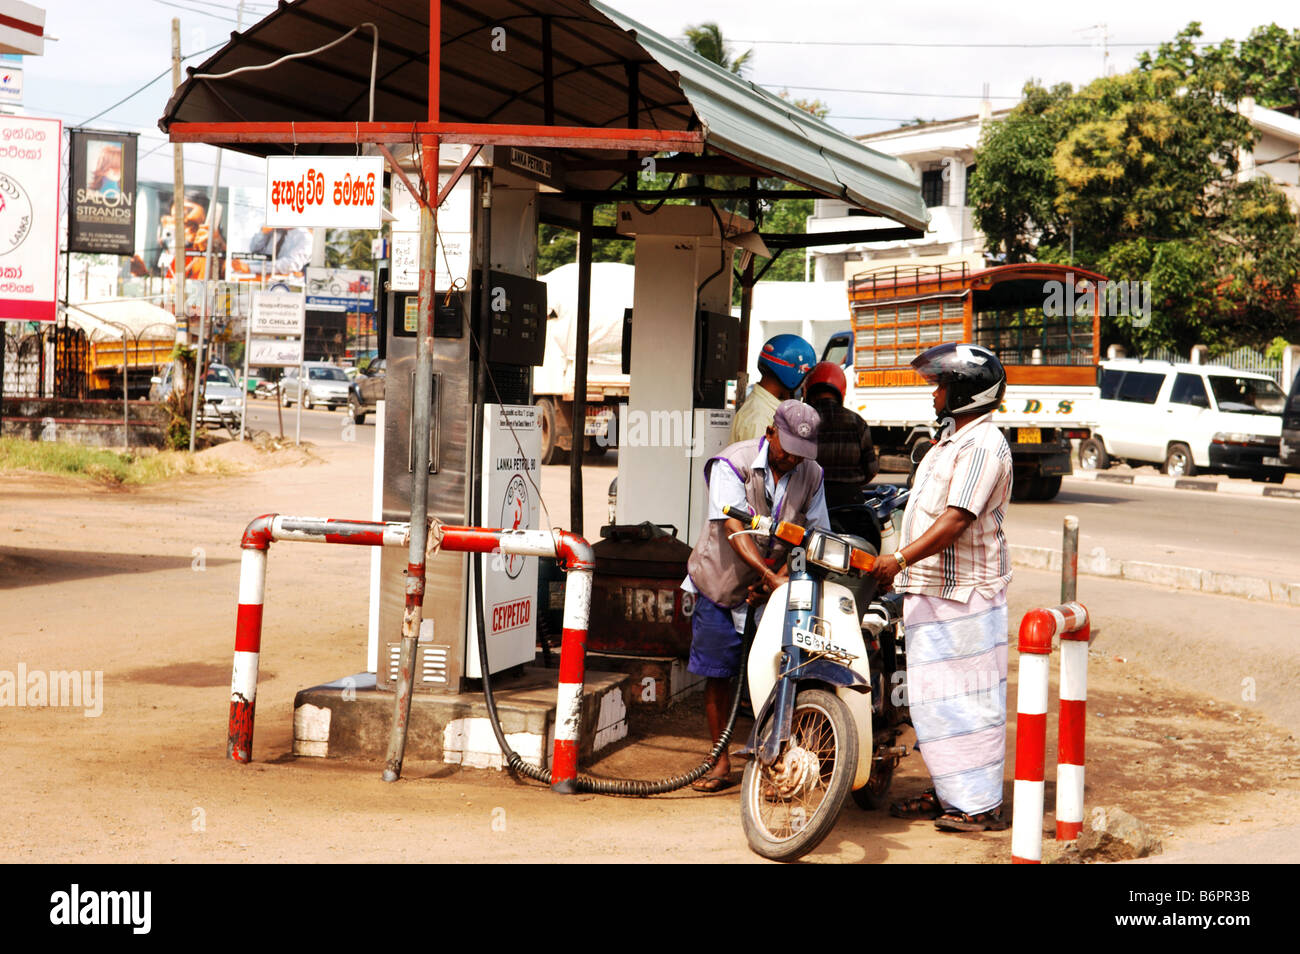 Île de Sri Lanka, asie, crise économique, photo Kazimierz Jurewicz, Banque D'Images